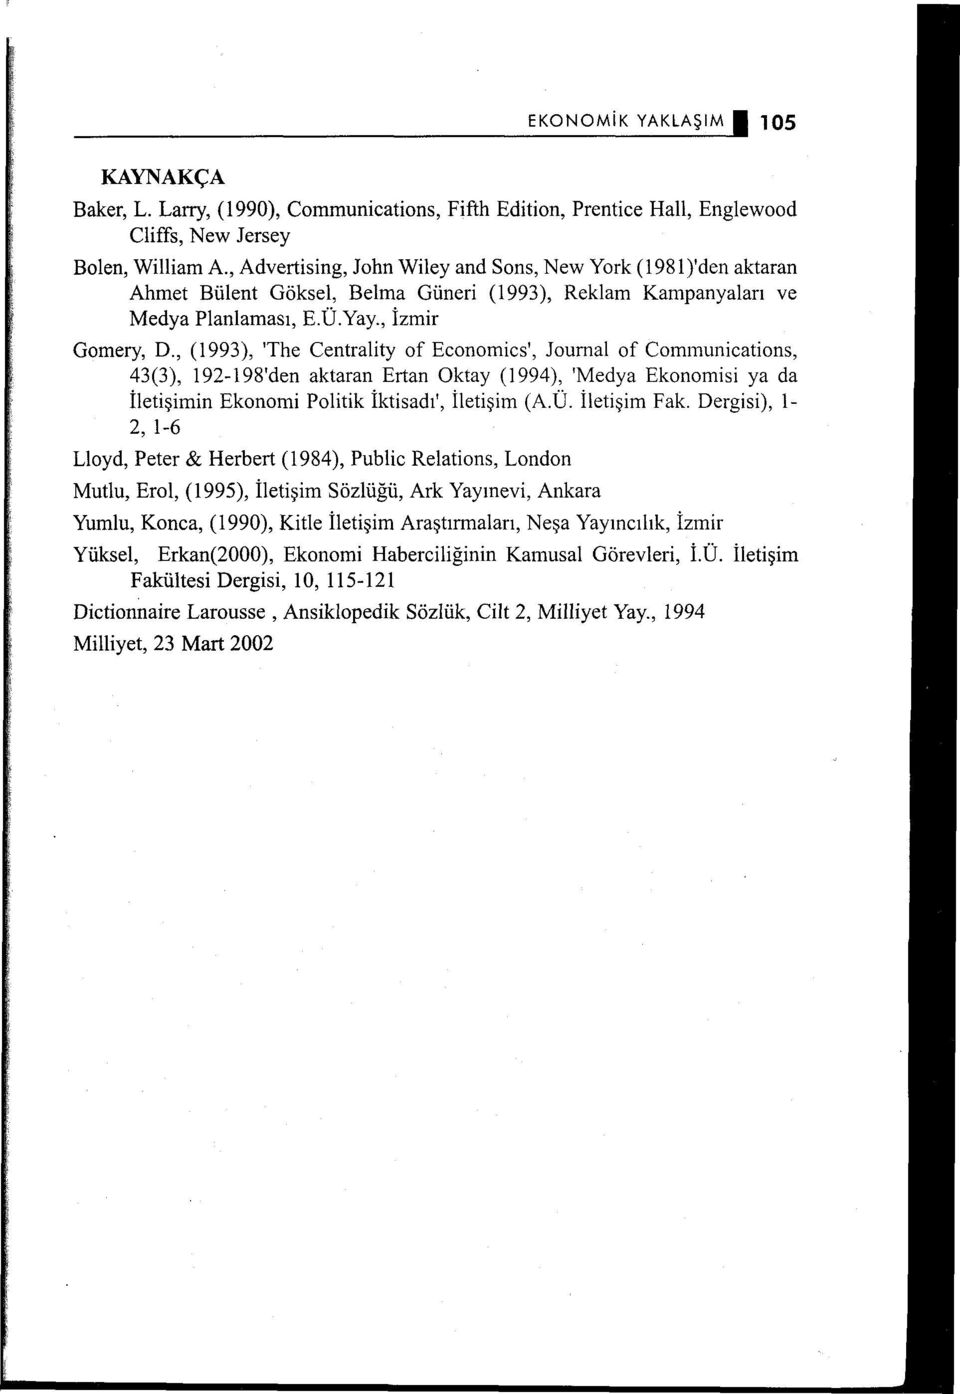 , (1993), 'The Centrality of Economics', Journal of Communications, 43(3), ı 92-198'den aktaran Ertan Oktay (1994), 'Medya Ekonomisi ya da İletişiminEkonomi Politik İktisadı', İletişim (A.Ü.